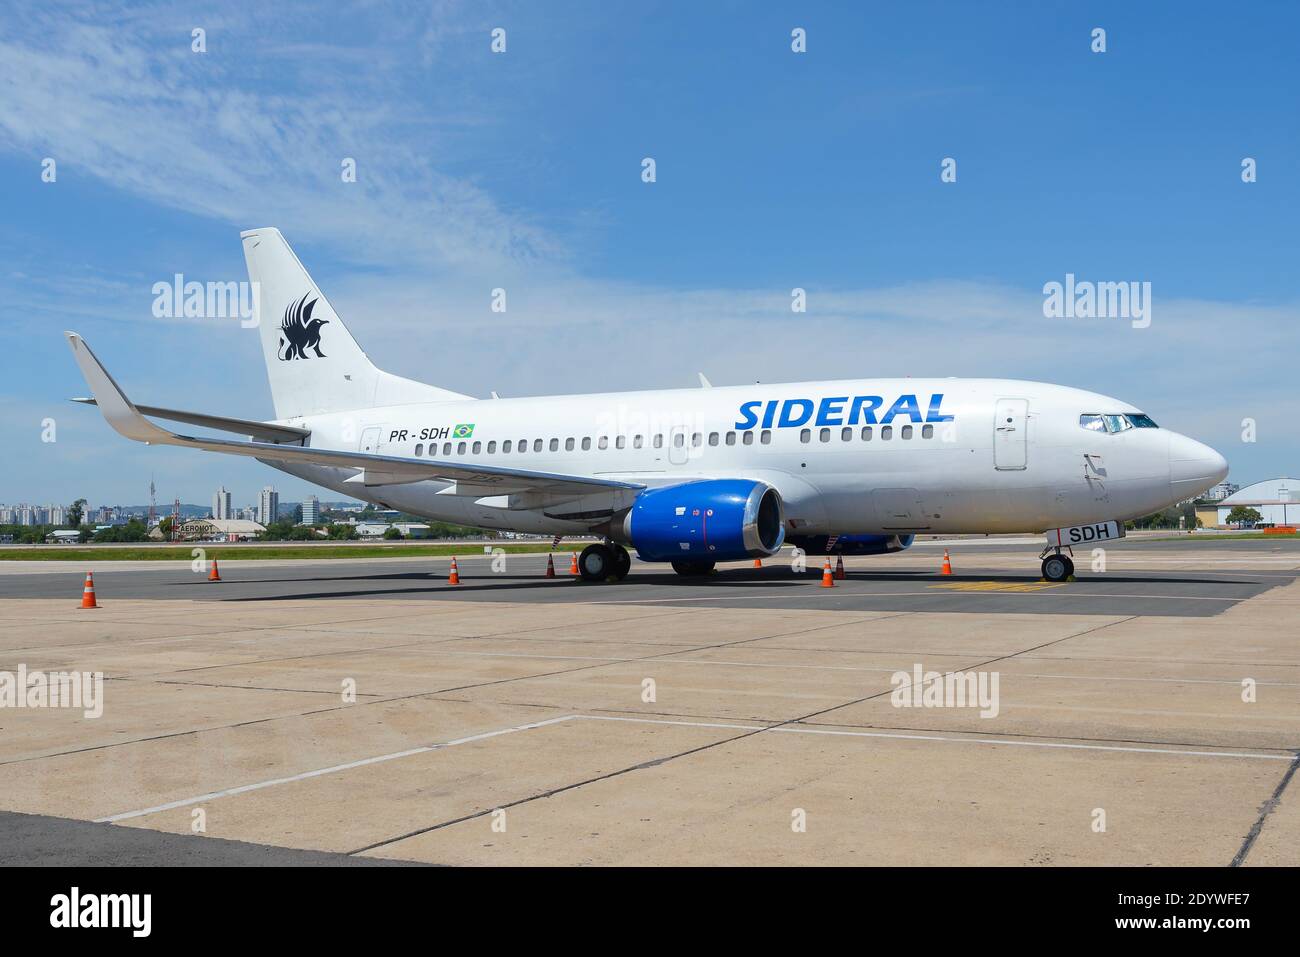 Sideral Airlines Boeing 737-500 parkte am Porto Alegre Airport in Brasilien. Flugzeug 737 für Charterflüge. Sideral Linhas Aereas Flugzeug. Stockfoto